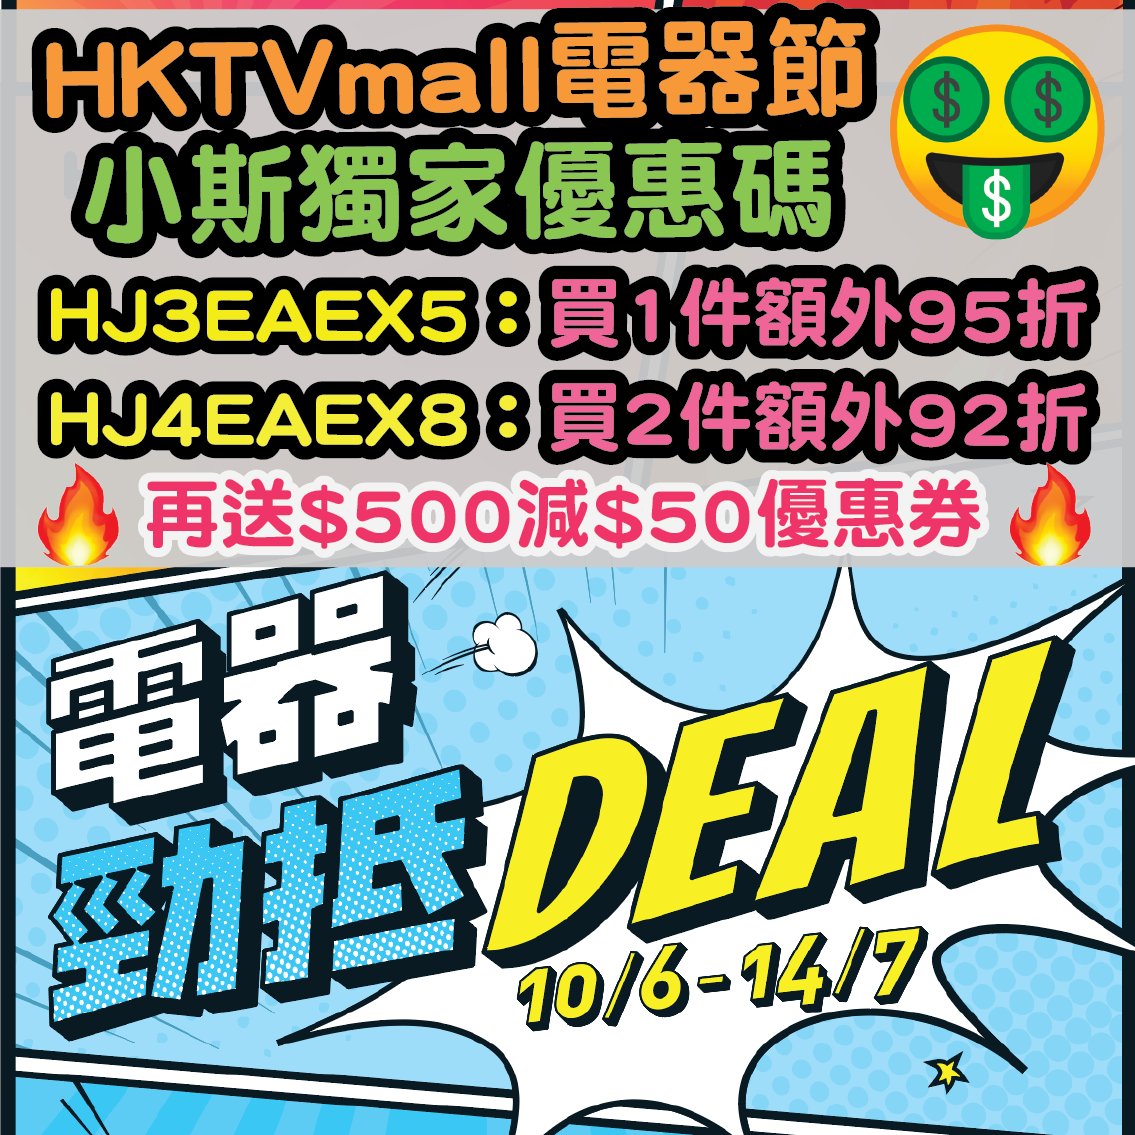 【HKTVmall電器節小斯獨家優惠】7月14日或之前，輸入小斯優惠碼「HJ3EAEX5」指定電器買1件額外95折、「HJ4EAEX8」2件額外92折！小斯獨家：每張單仲送$500減$50優惠券呀！！